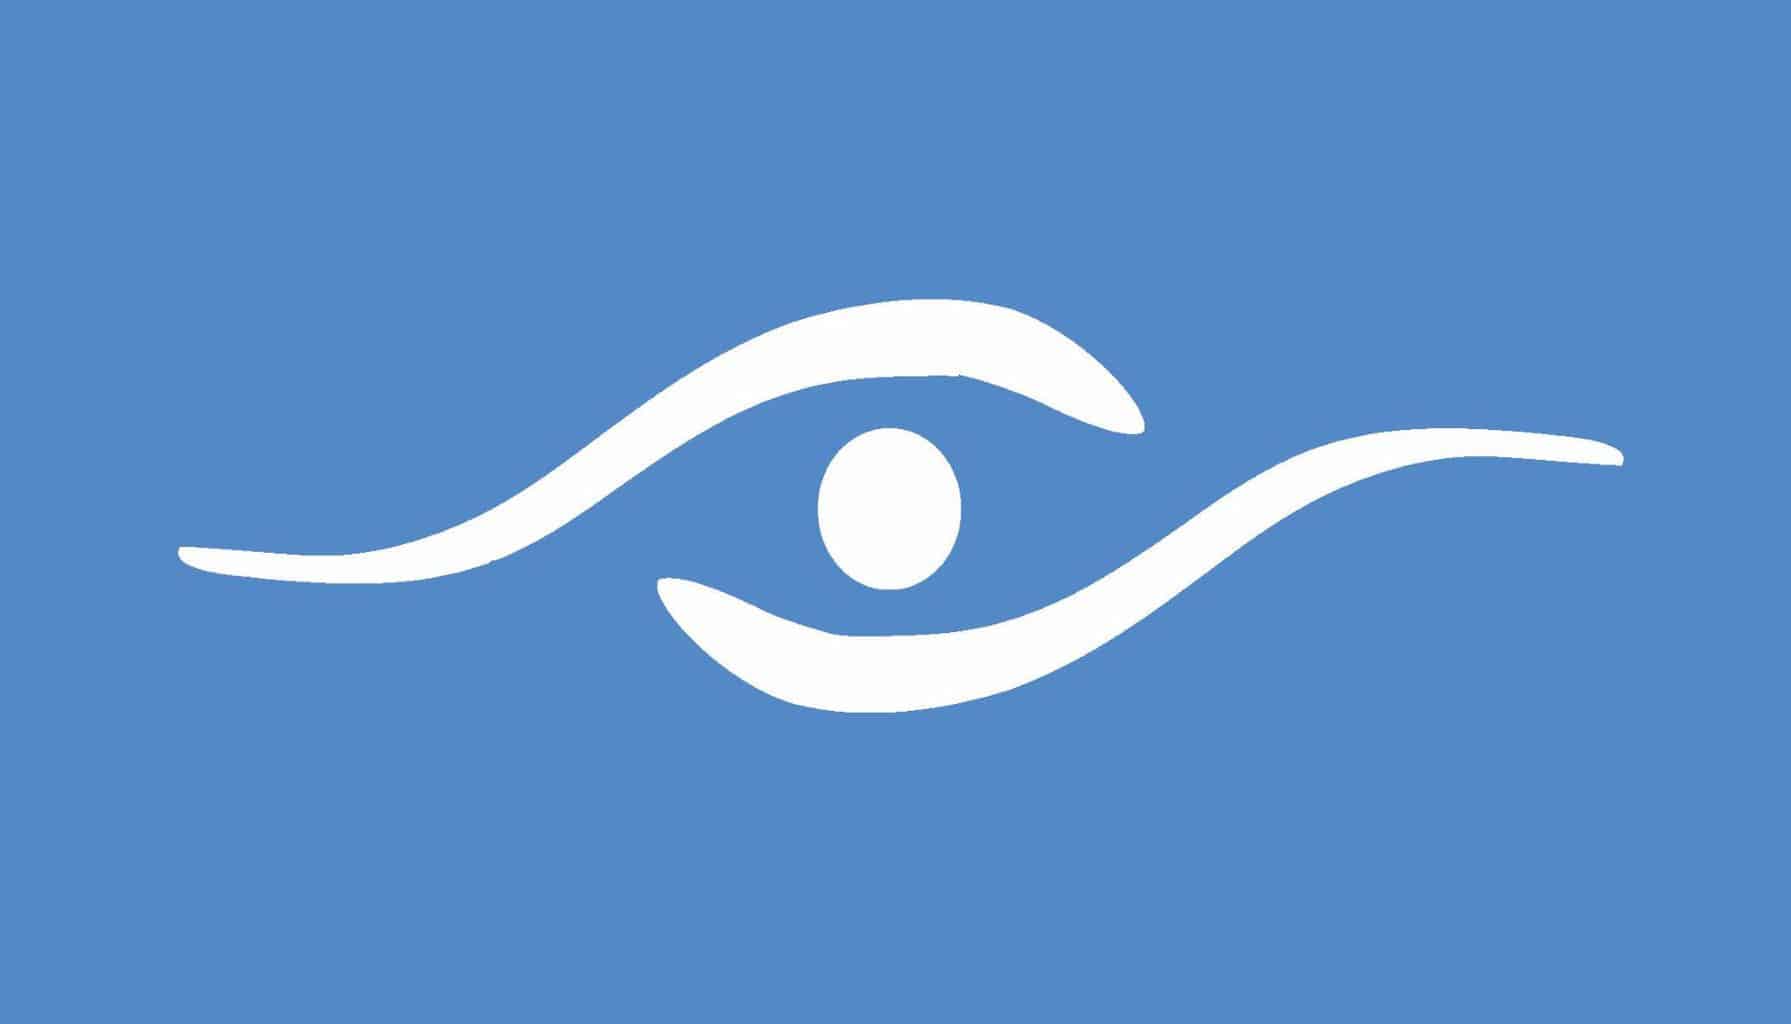 logo blue background